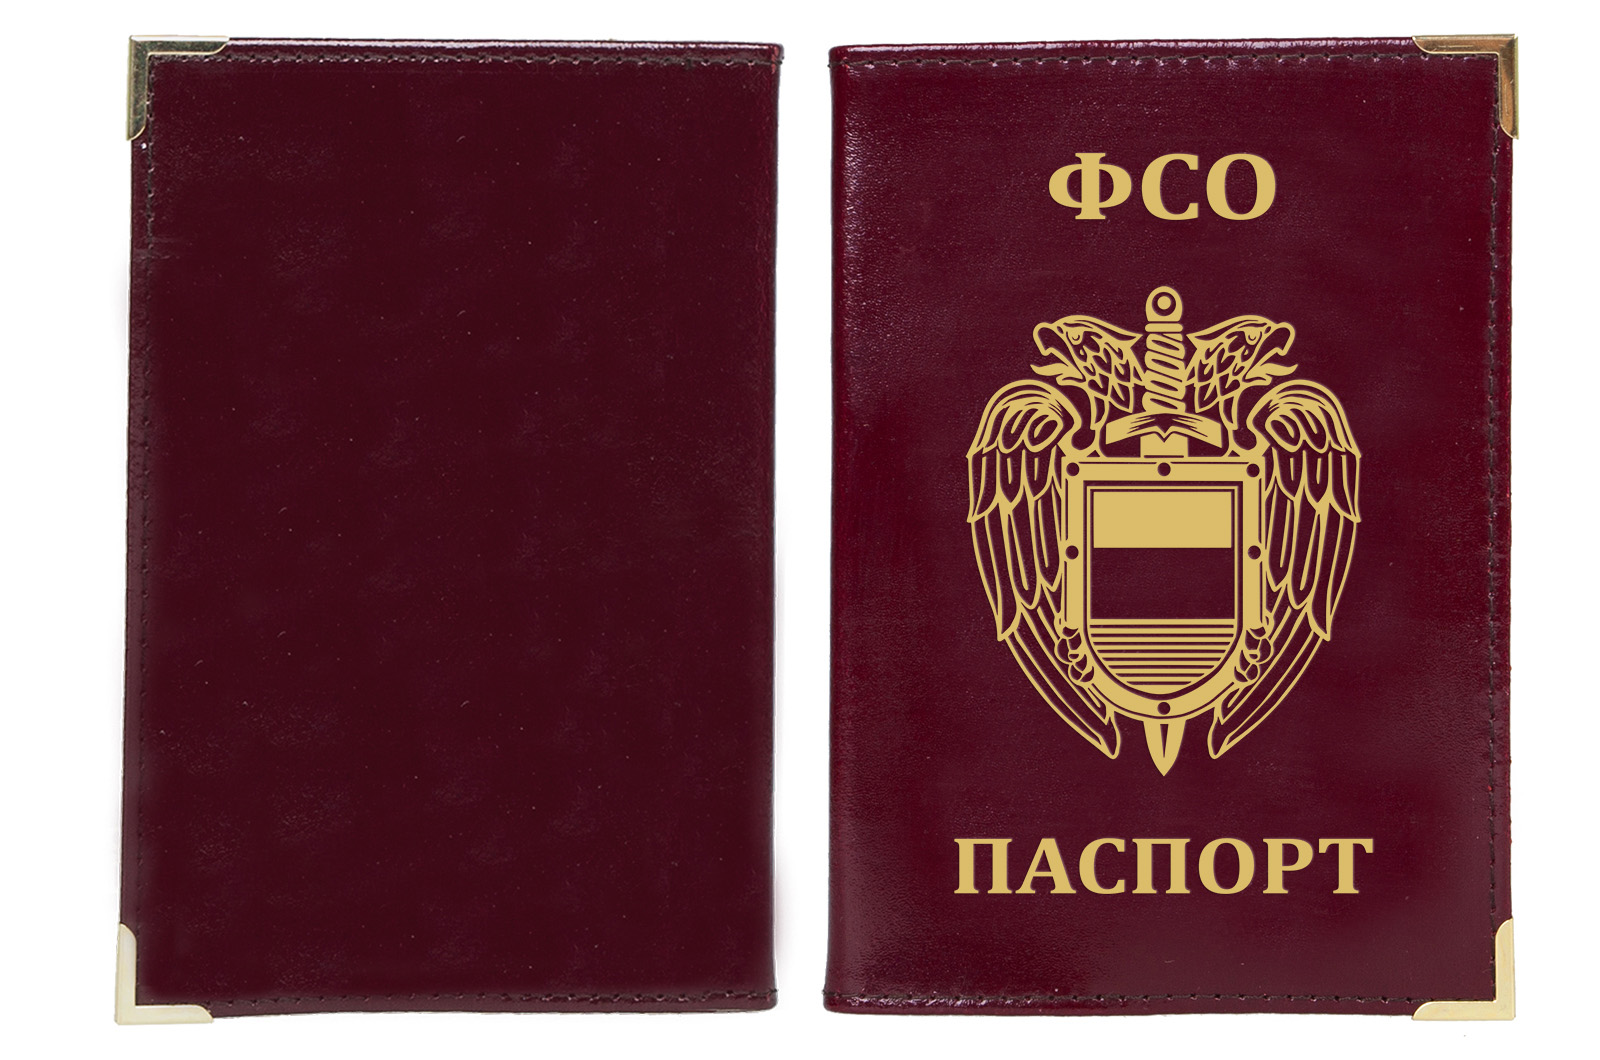 Стильная обложка на паспорт с эмблемой ФСО по лучшей цене